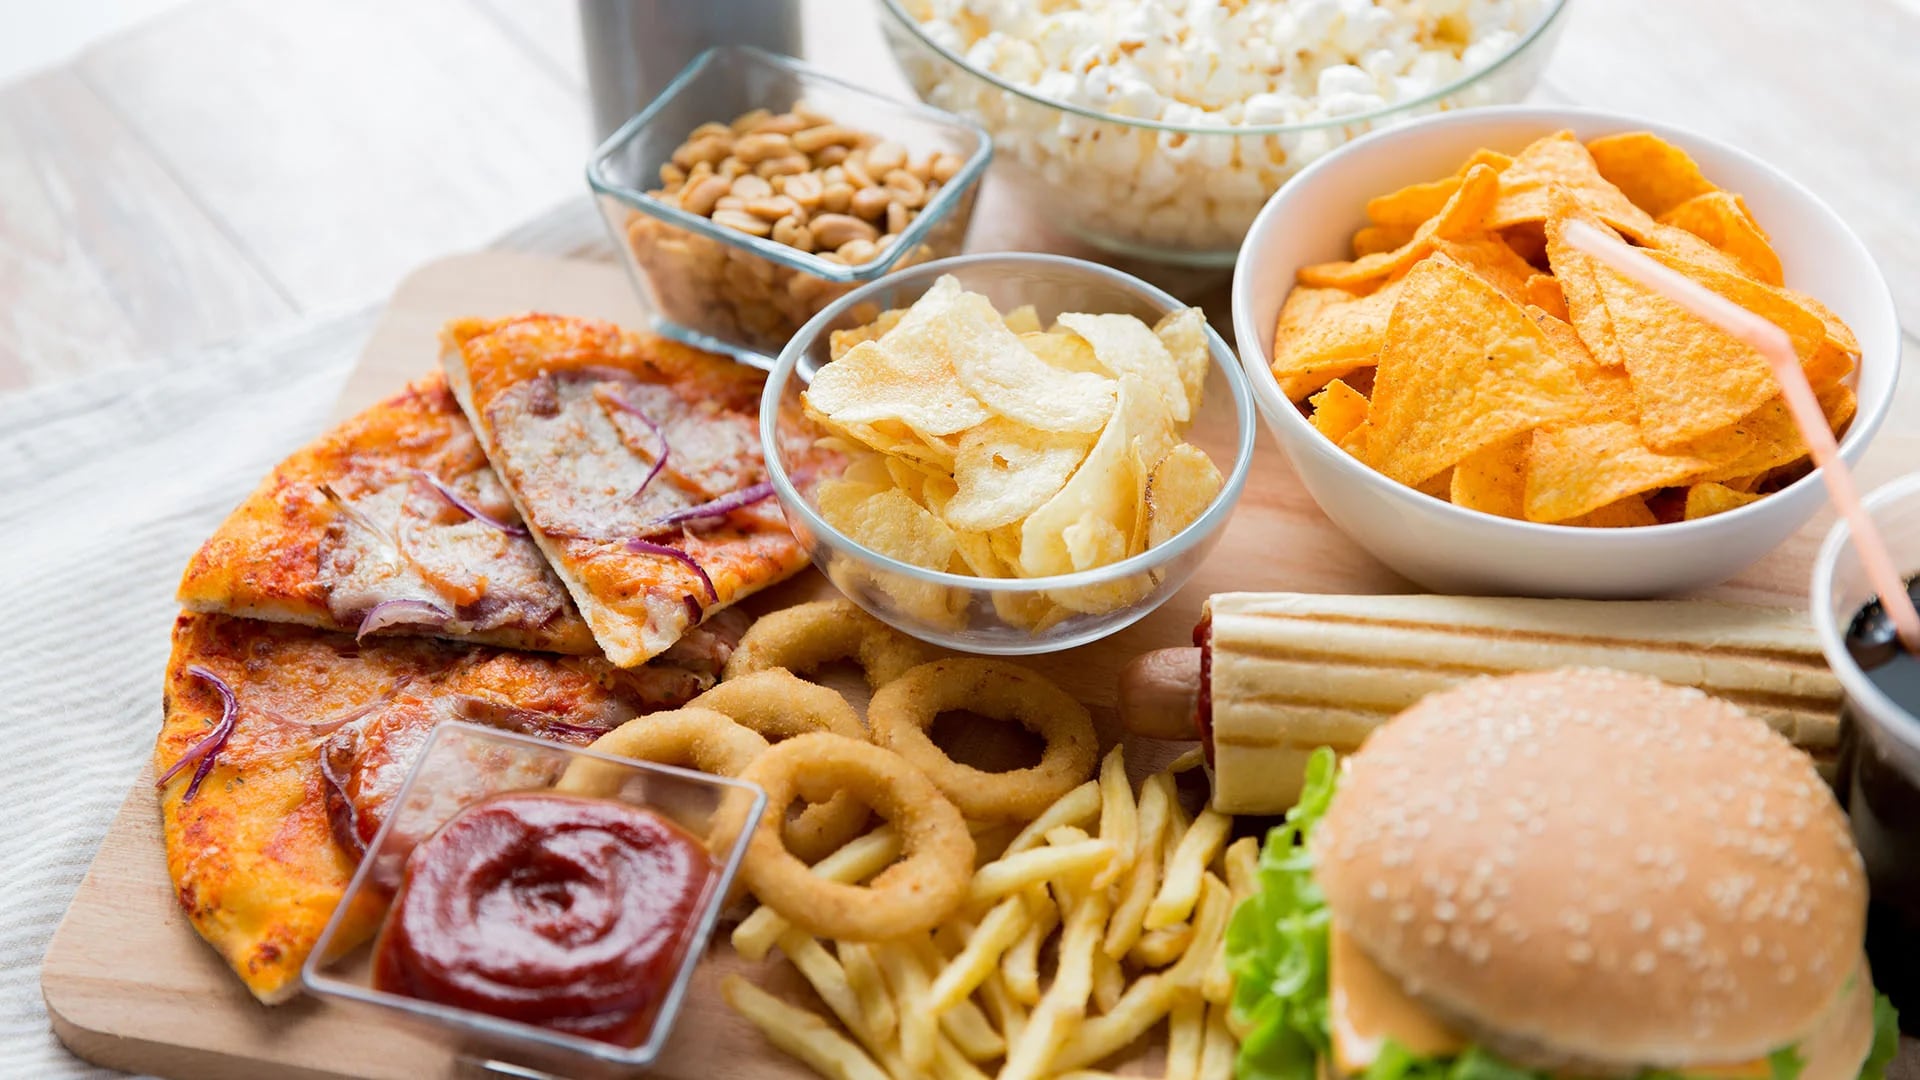 La obesidad es sólo una de las consecuencias del consumo excesivo de alimentos ultraprocesados (Shutterstock)